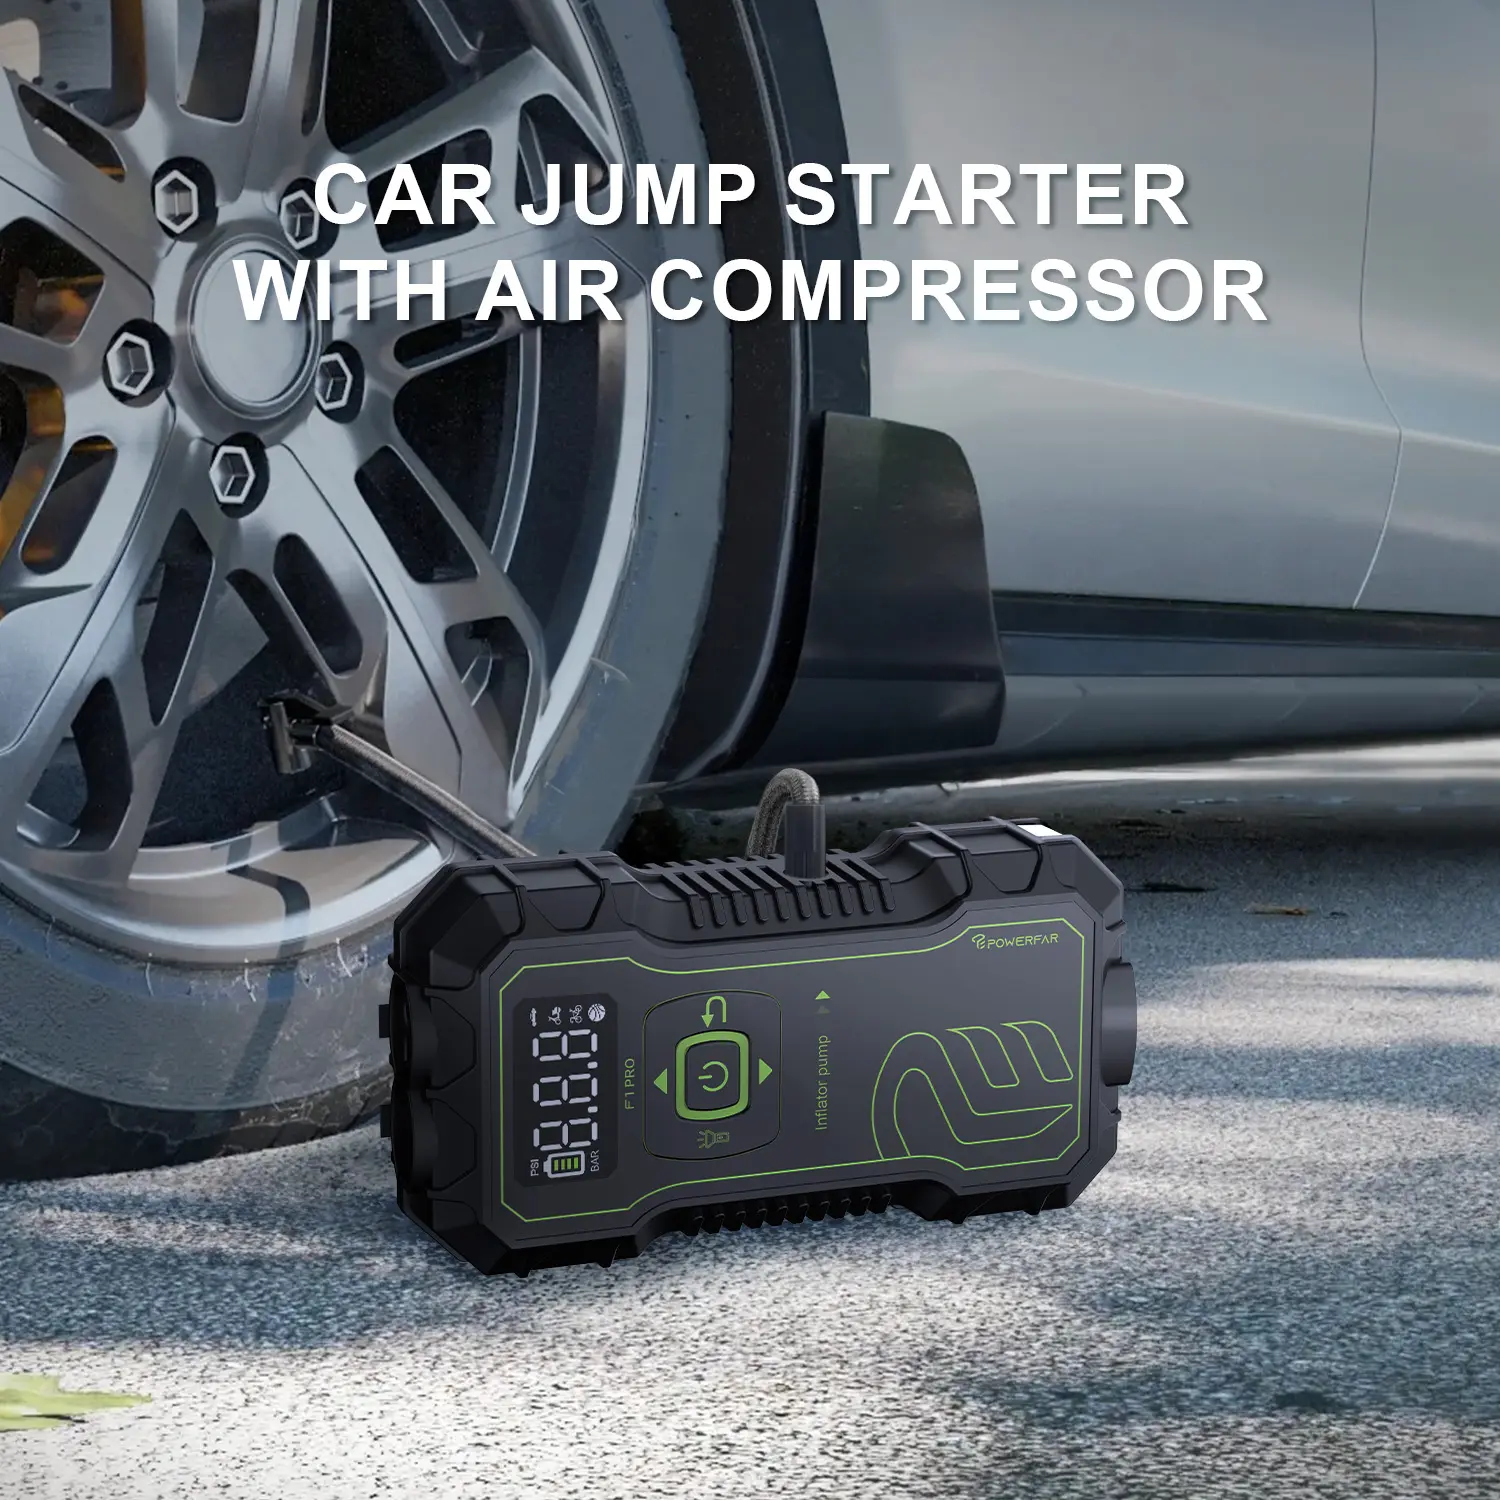 손전등이있는 자동차 점프 스타터 휴대용 자전거 타이어 디지털 타이어 펌프 비상 배터리 부스터